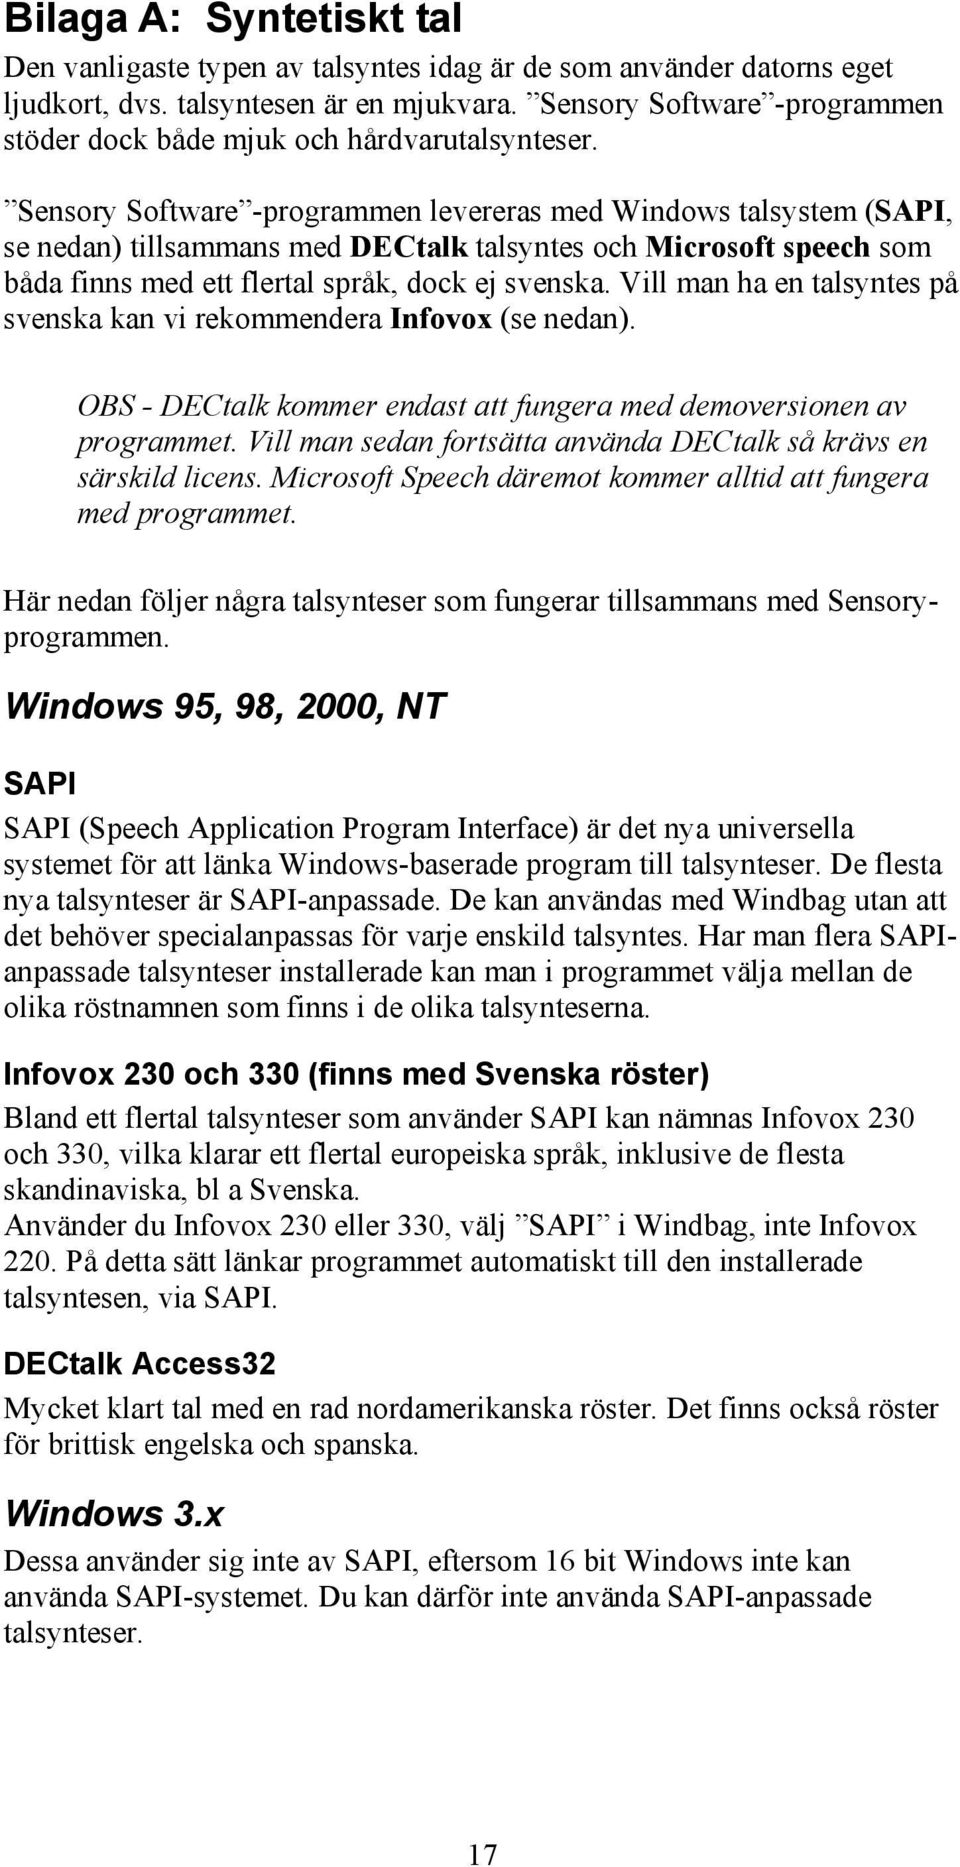 Sensory Software -programmen levereras med Windows talsystem (SAPI, se nedan) tillsammans med DECtalk talsyntes och Microsoft speech som båda finns med ett flertal språk, dock ej svenska.